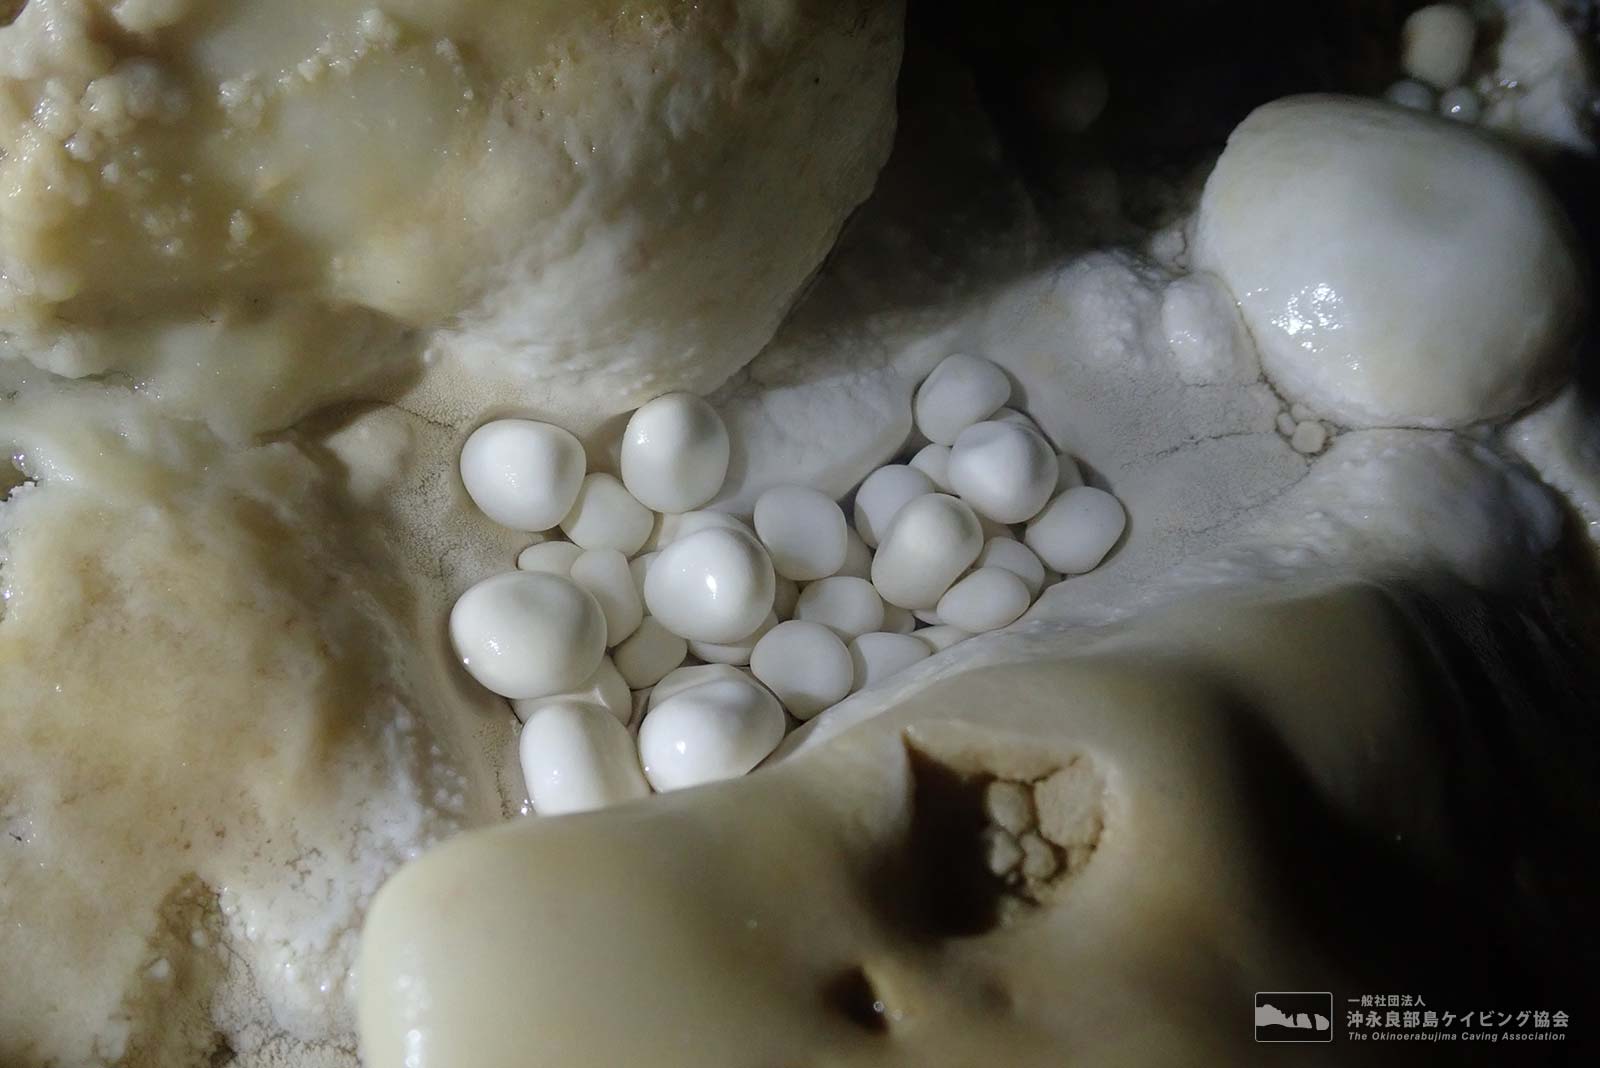 洞窟真珠と呼ばれる珍しく美しい鍾乳石